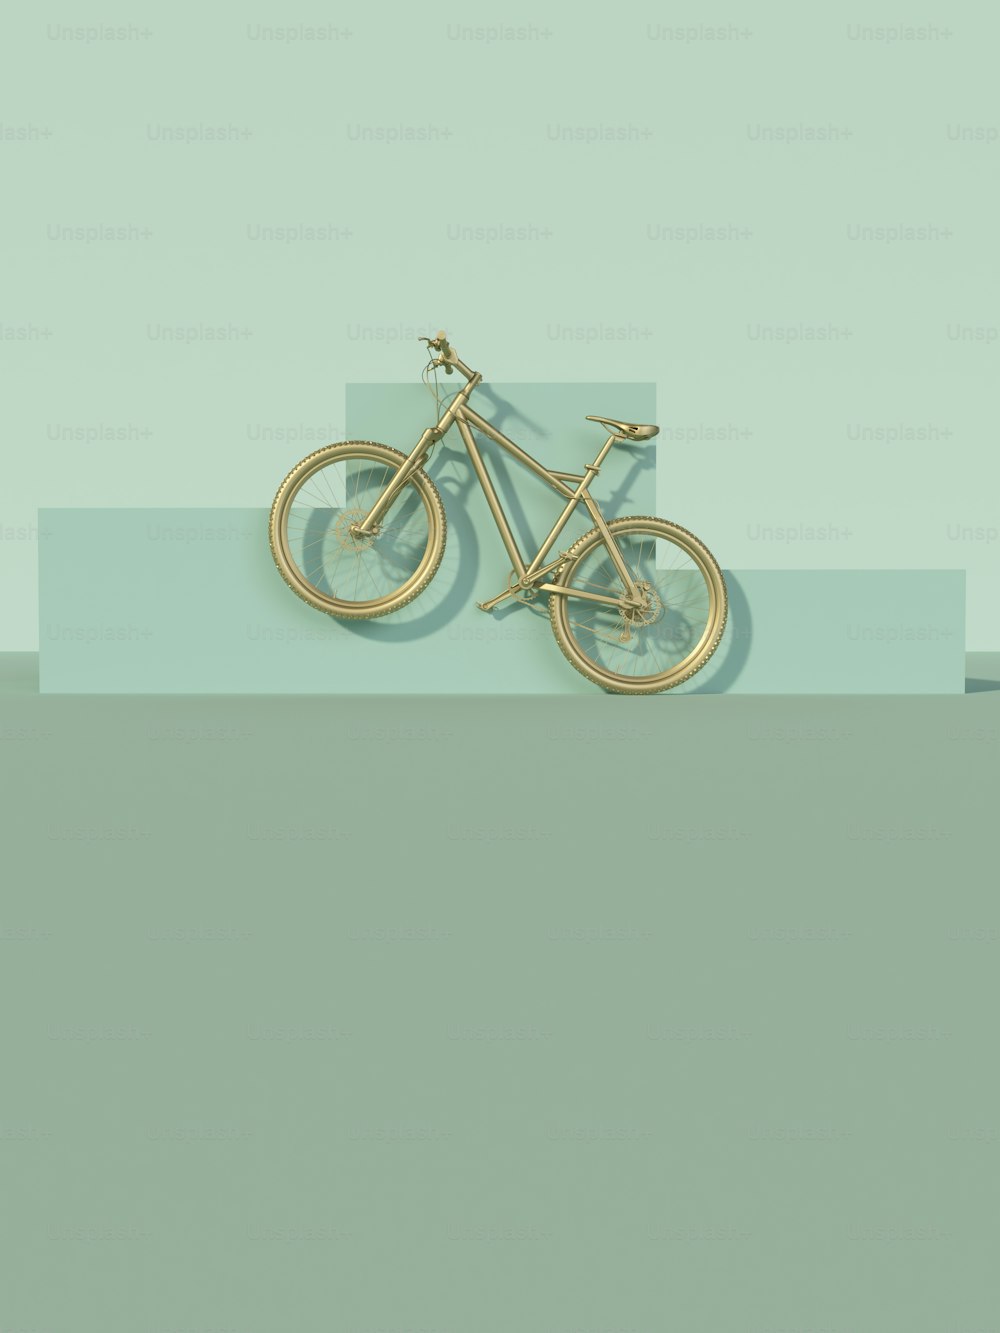 Se muestra una bicicleta dorada sobre un fondo azul y verde